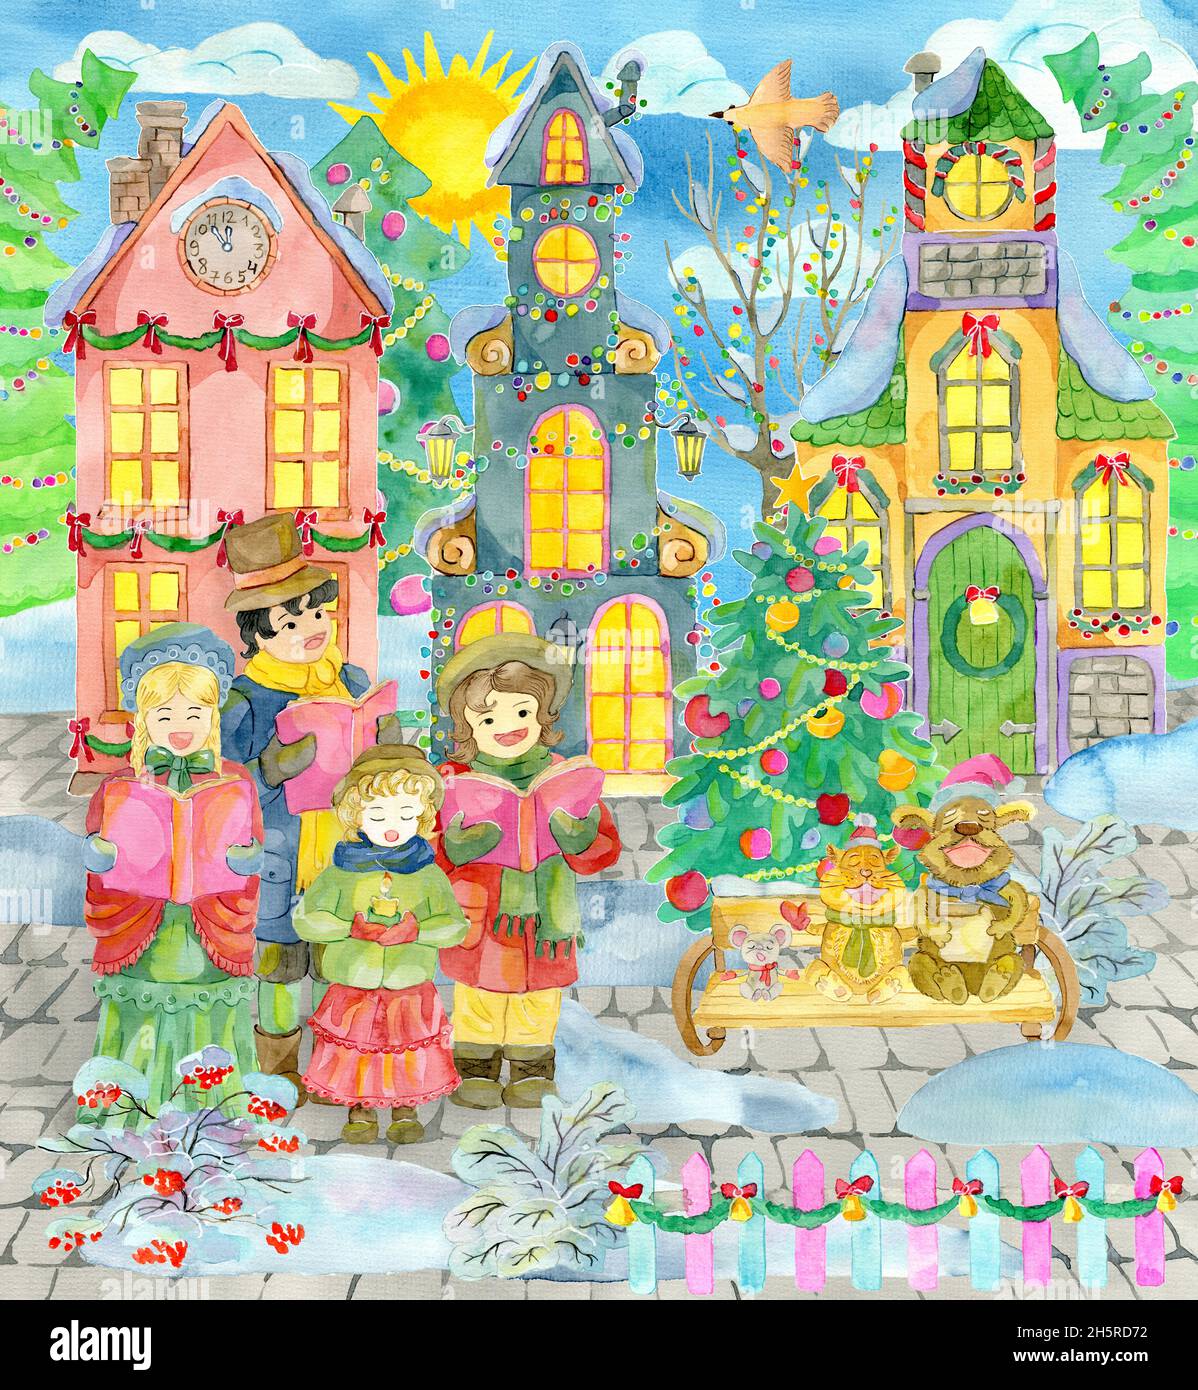 Grußkarte mit Weihnachtschor, der an sonnigen Tagen Weihnachtslieder an alten schönen Häusern und Nadelbäumen singt. Aquarell-Illustrationen. Winterweihnacht A Stockfoto